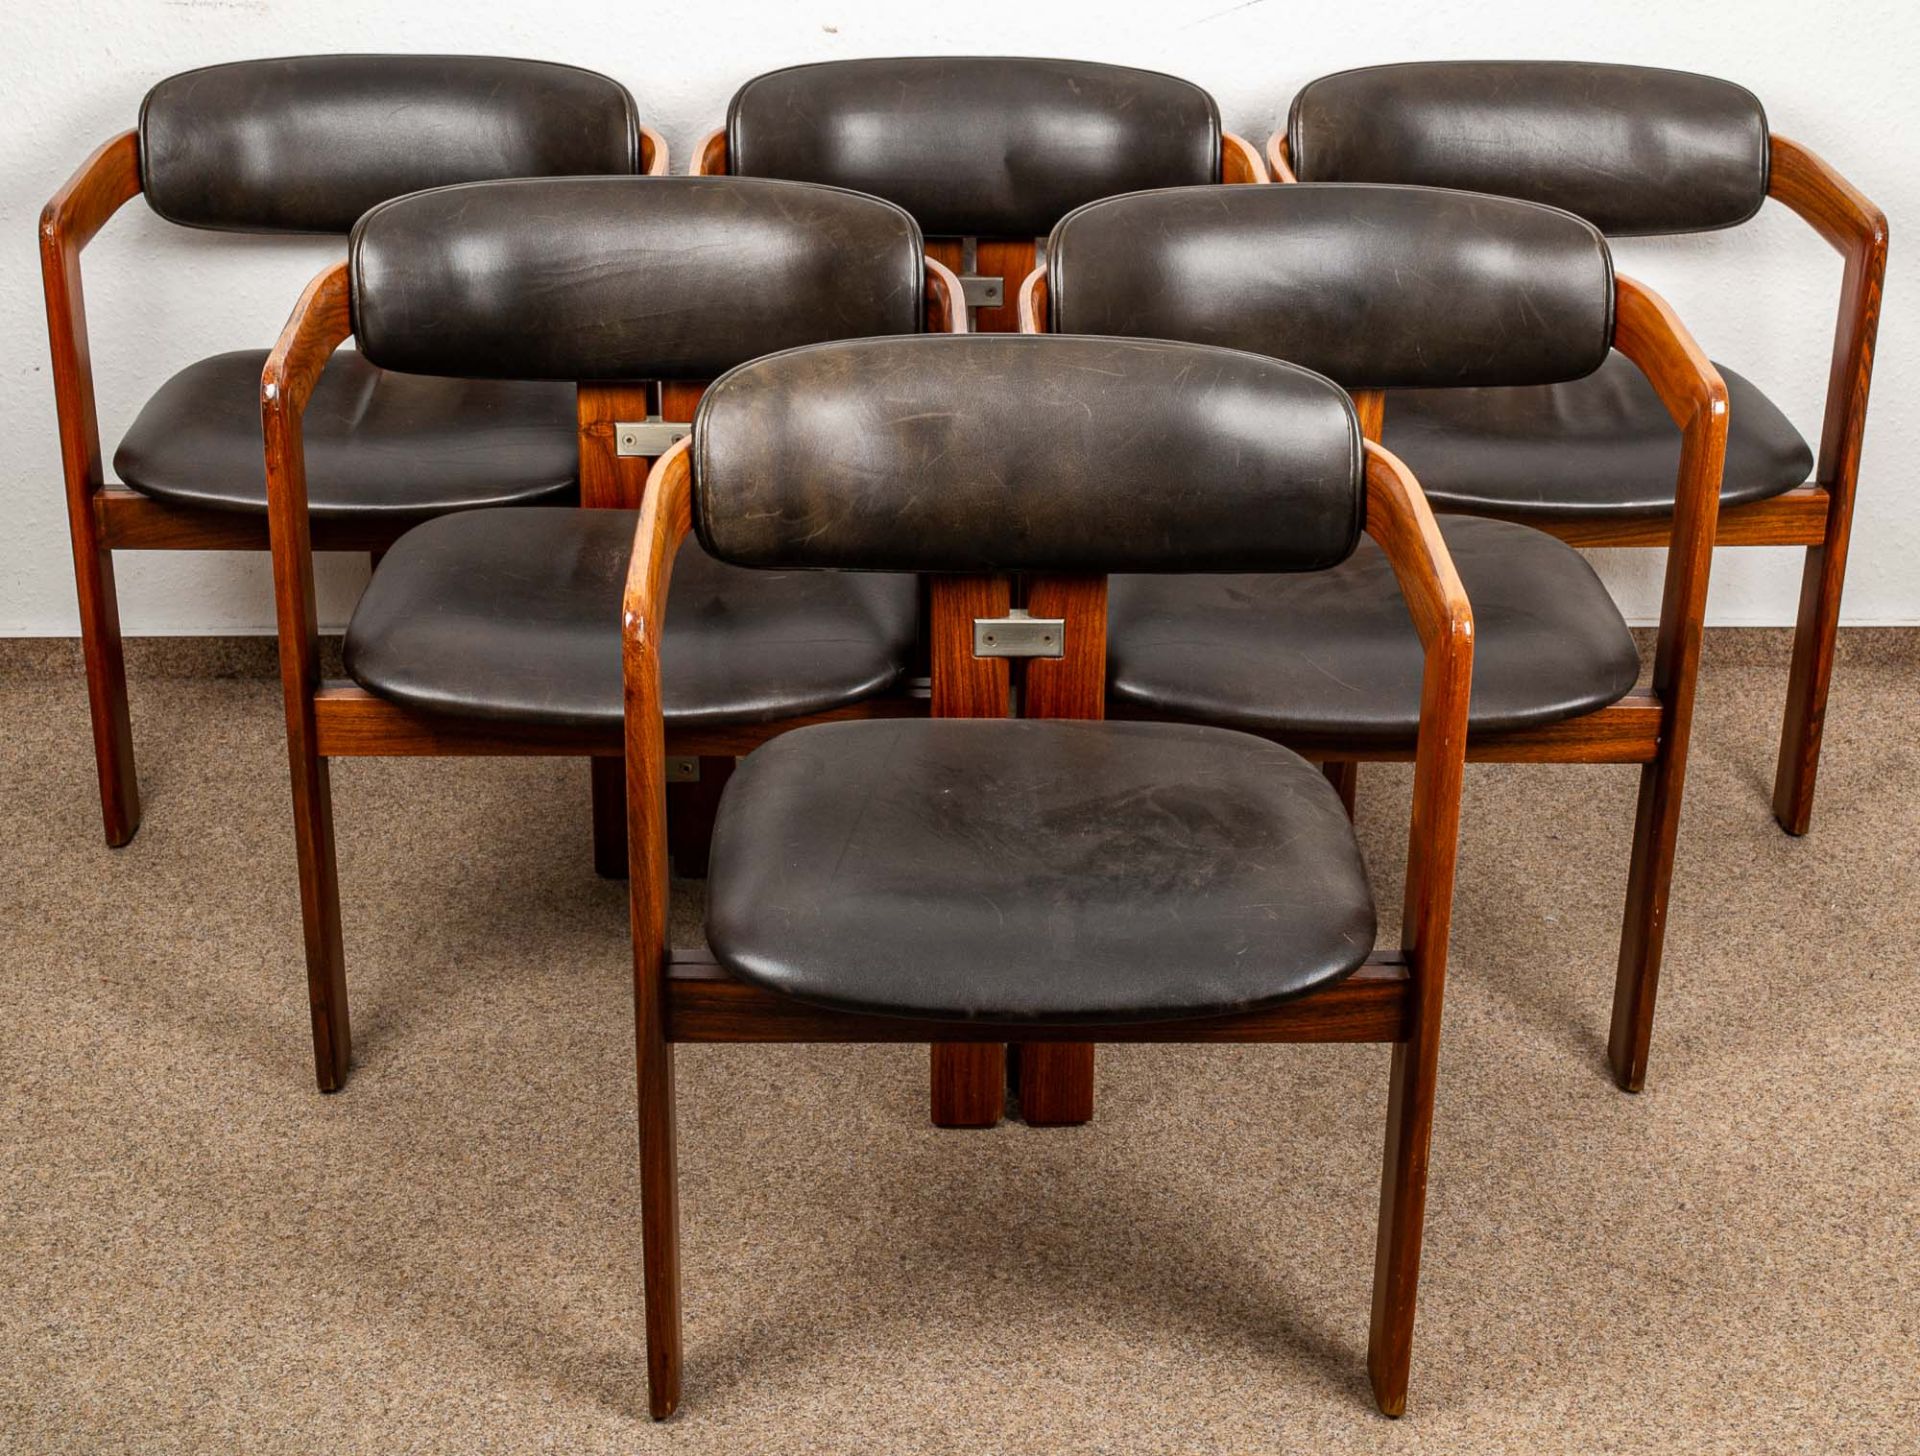 Folge von 6 "PAMPLONA" Dining Chairs, Entwurf des Augusto Savini (geb. 1930) vo